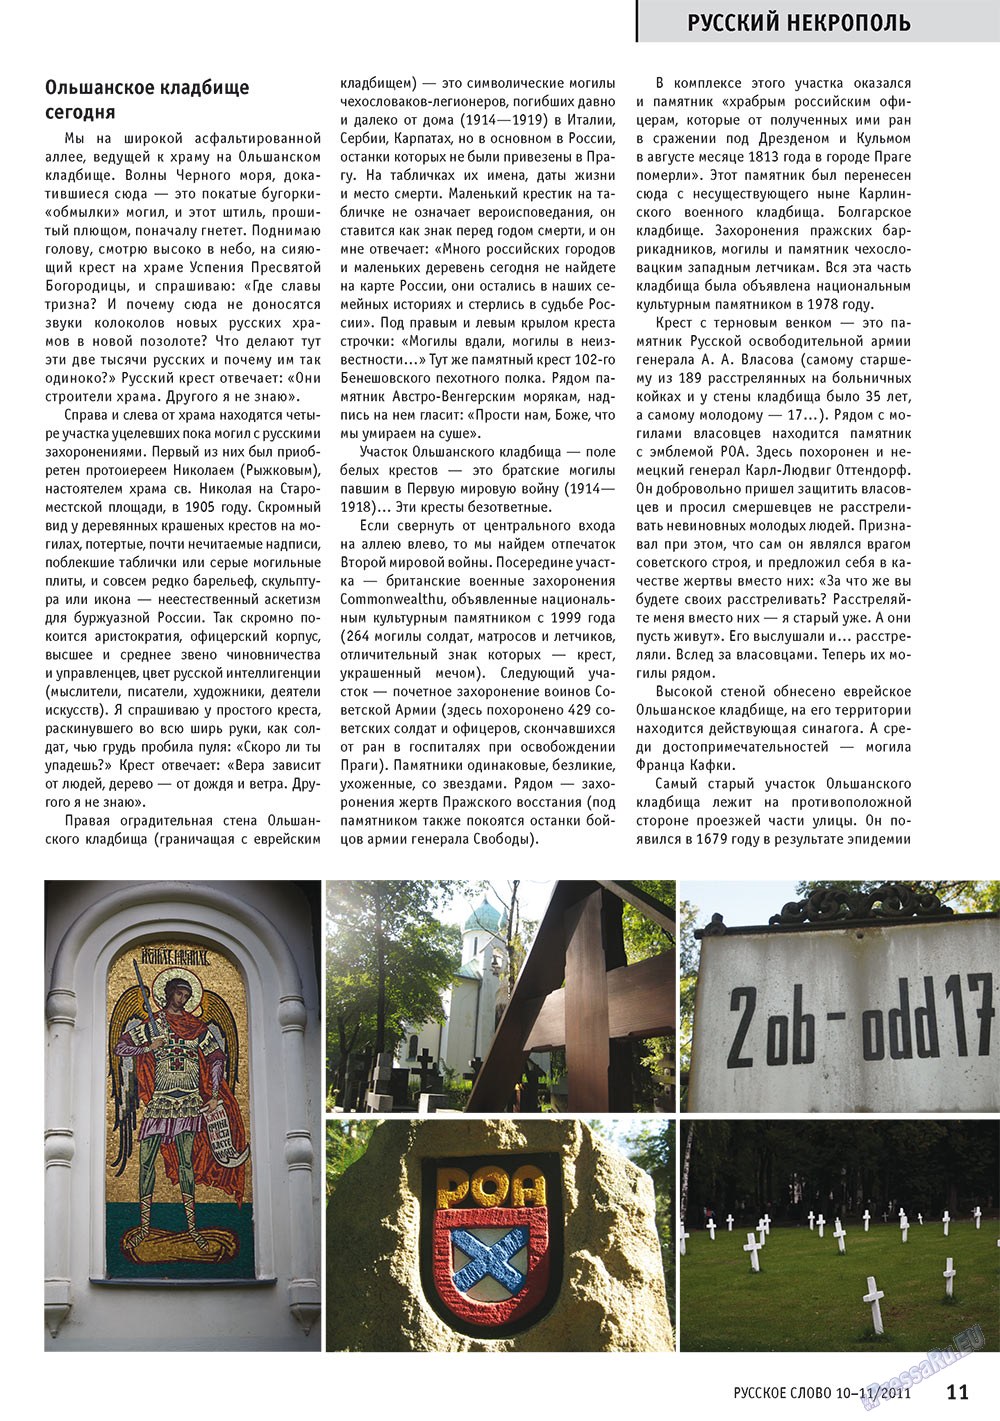 Русское слово (журнал). 2011 год, номер 10, стр. 13